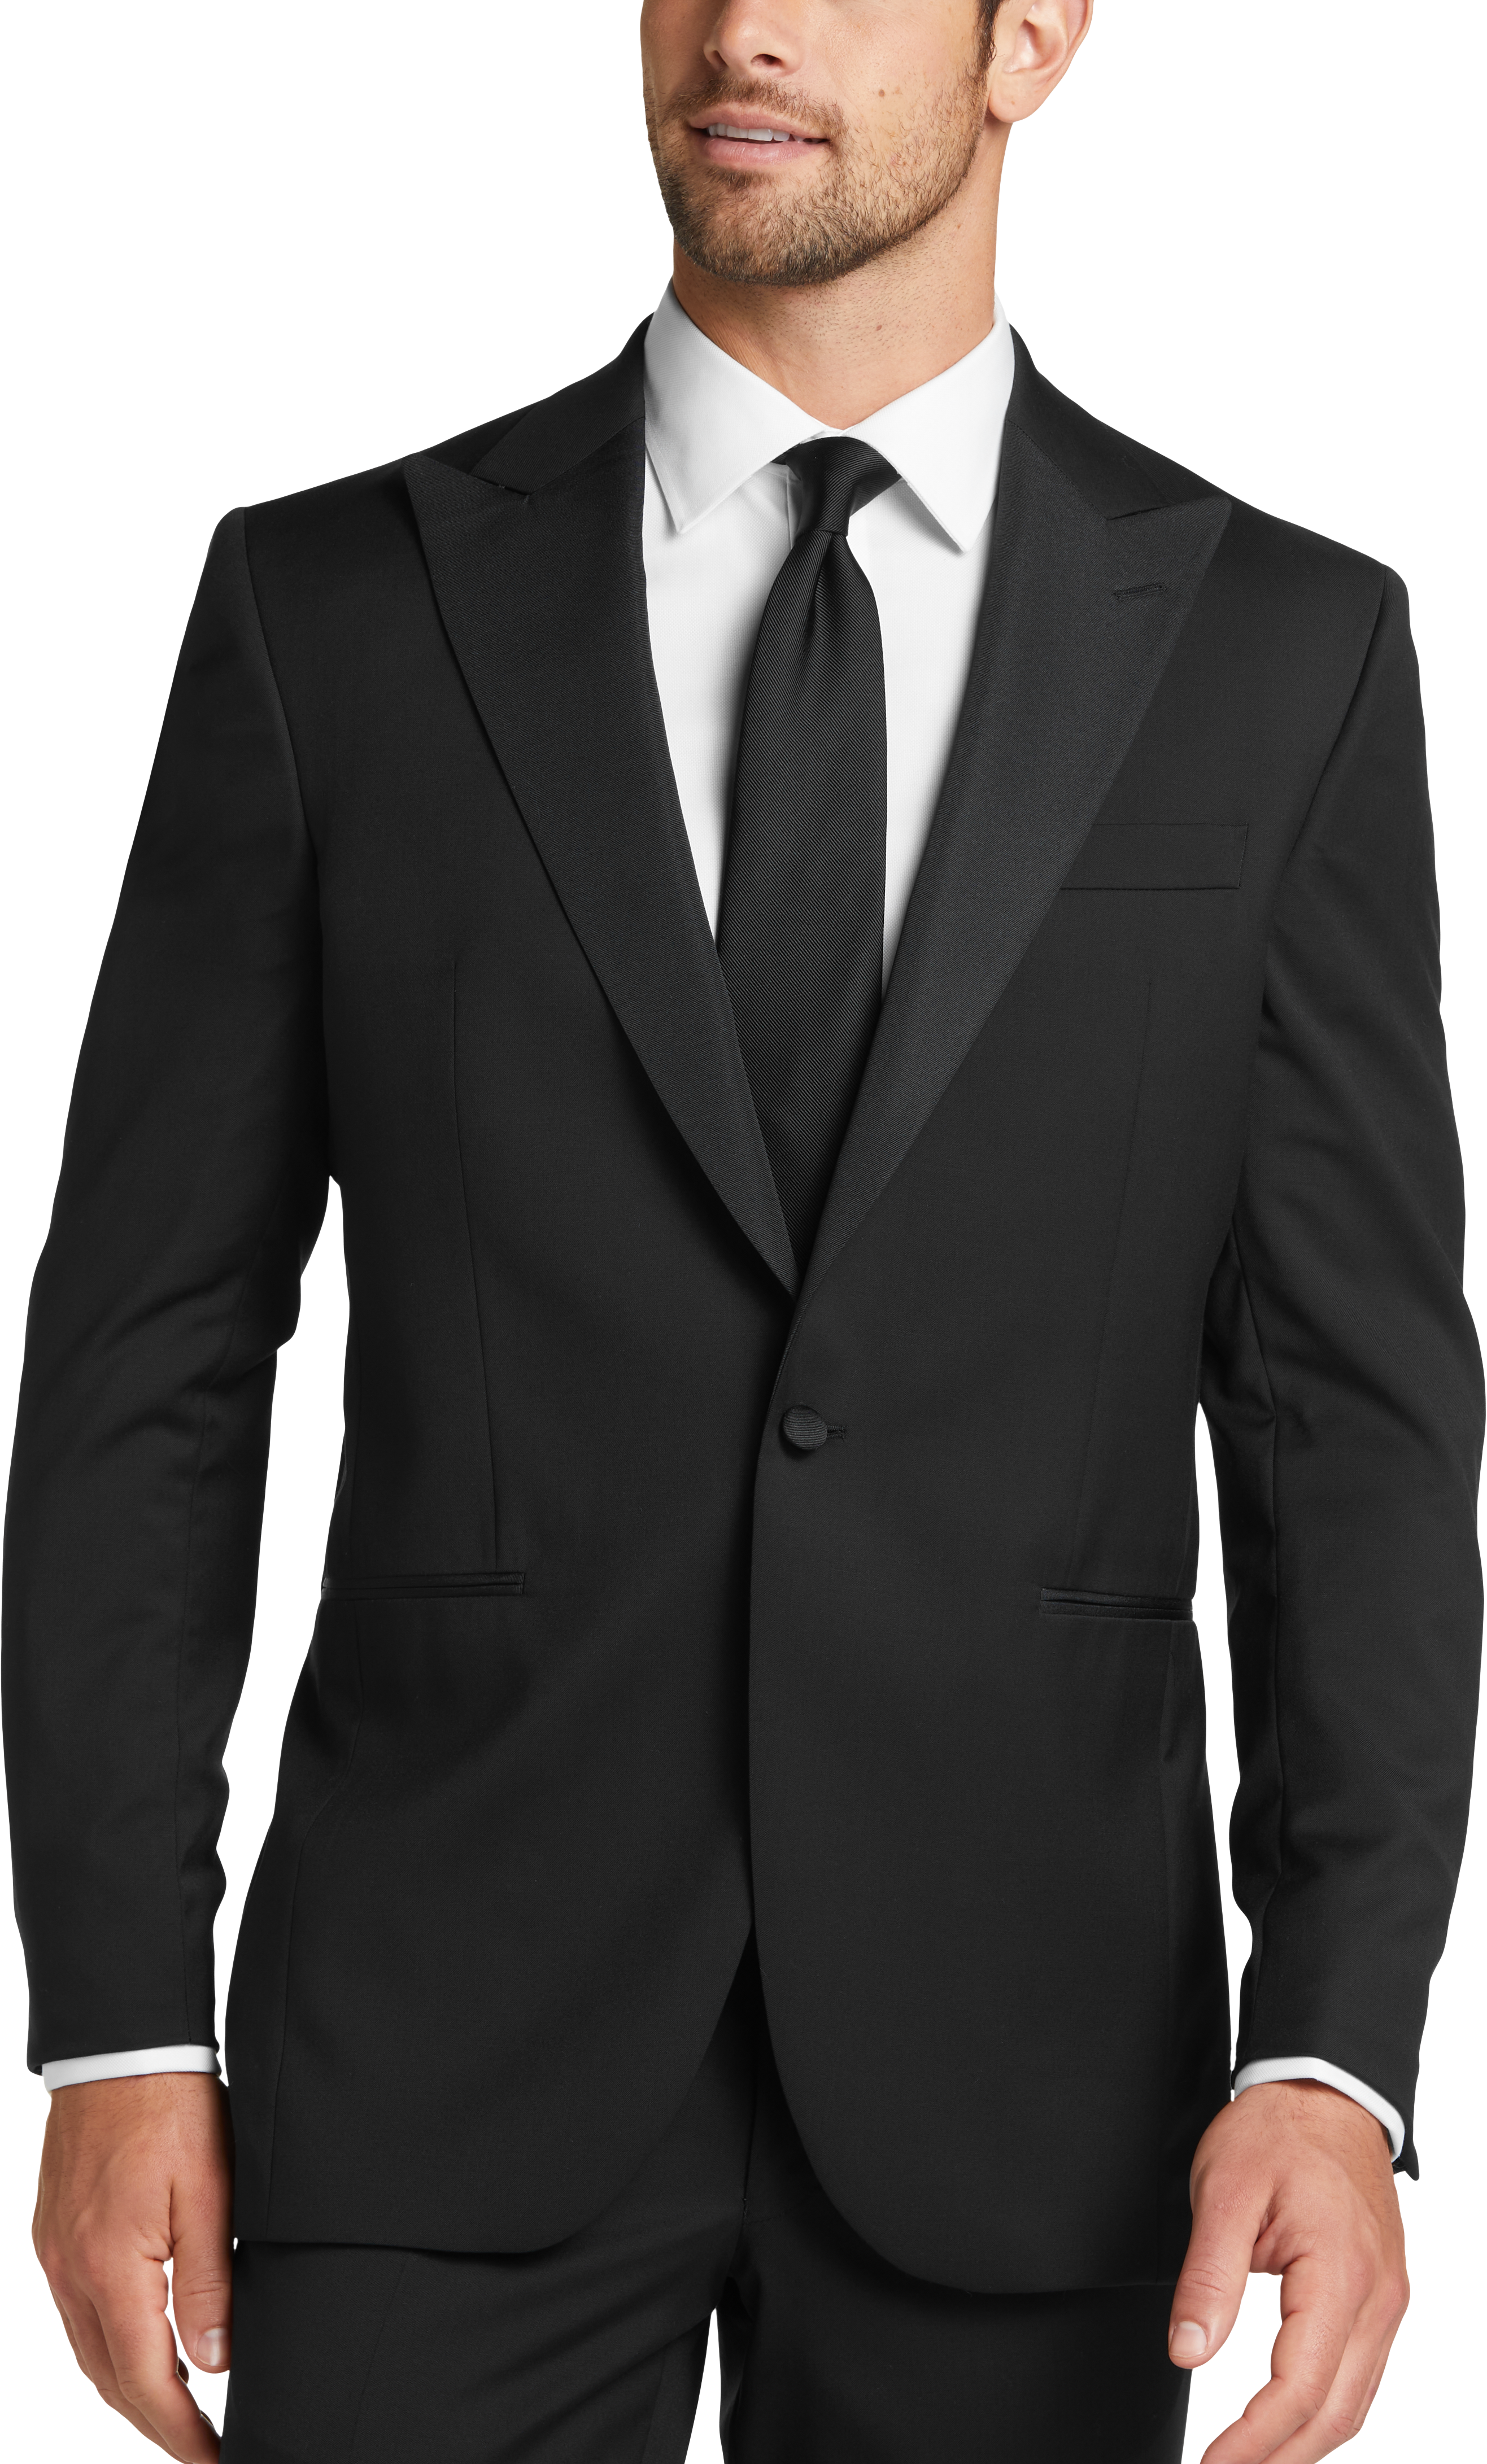 Men's Tuxedo & Black Tie Tuxes - Shop Formal Suits | Men's Wearhouse